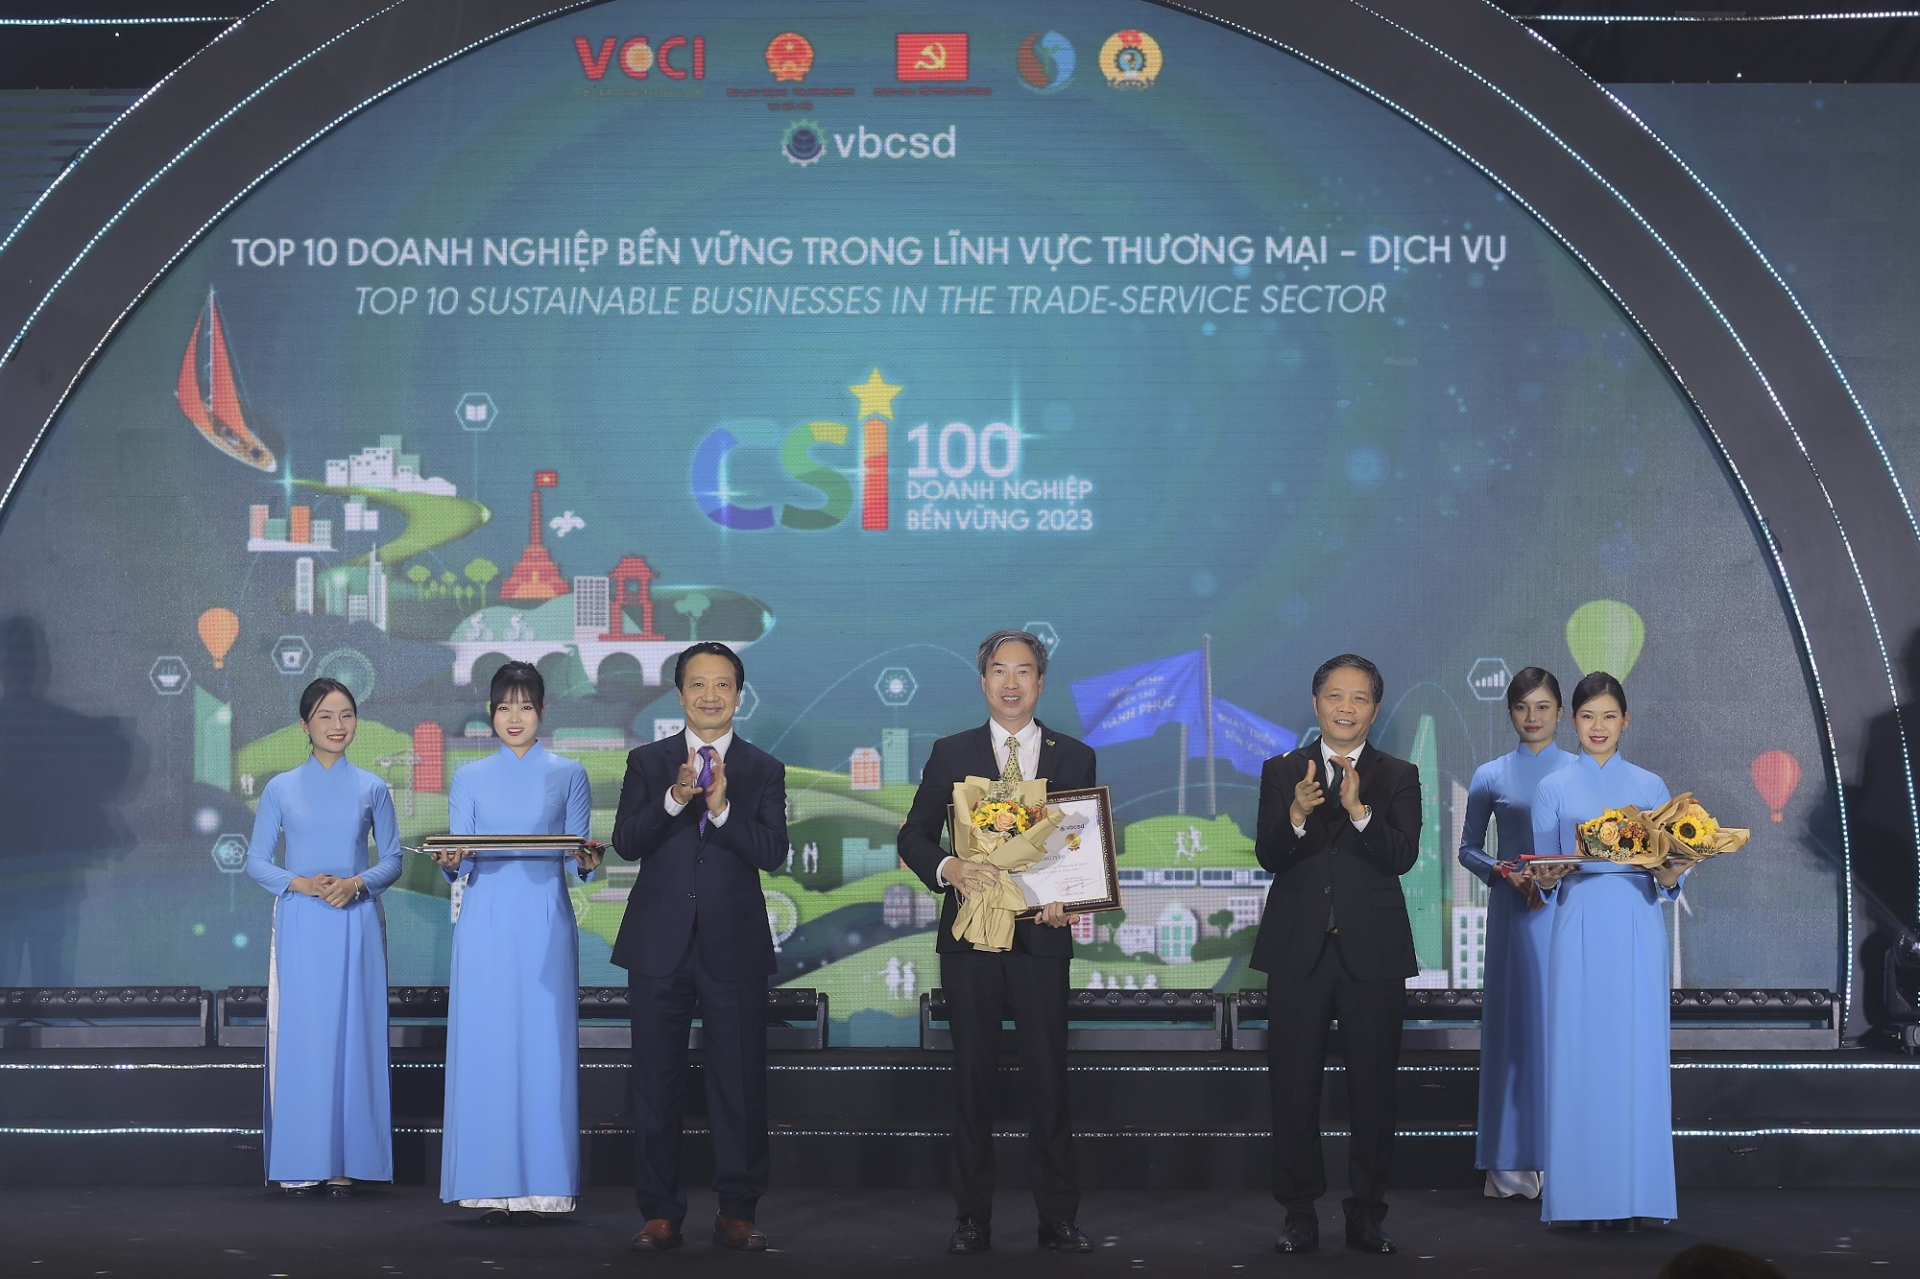 Tập đoàn BRG Top 10 doanh nghiệp bền vững Việt Nam 2023